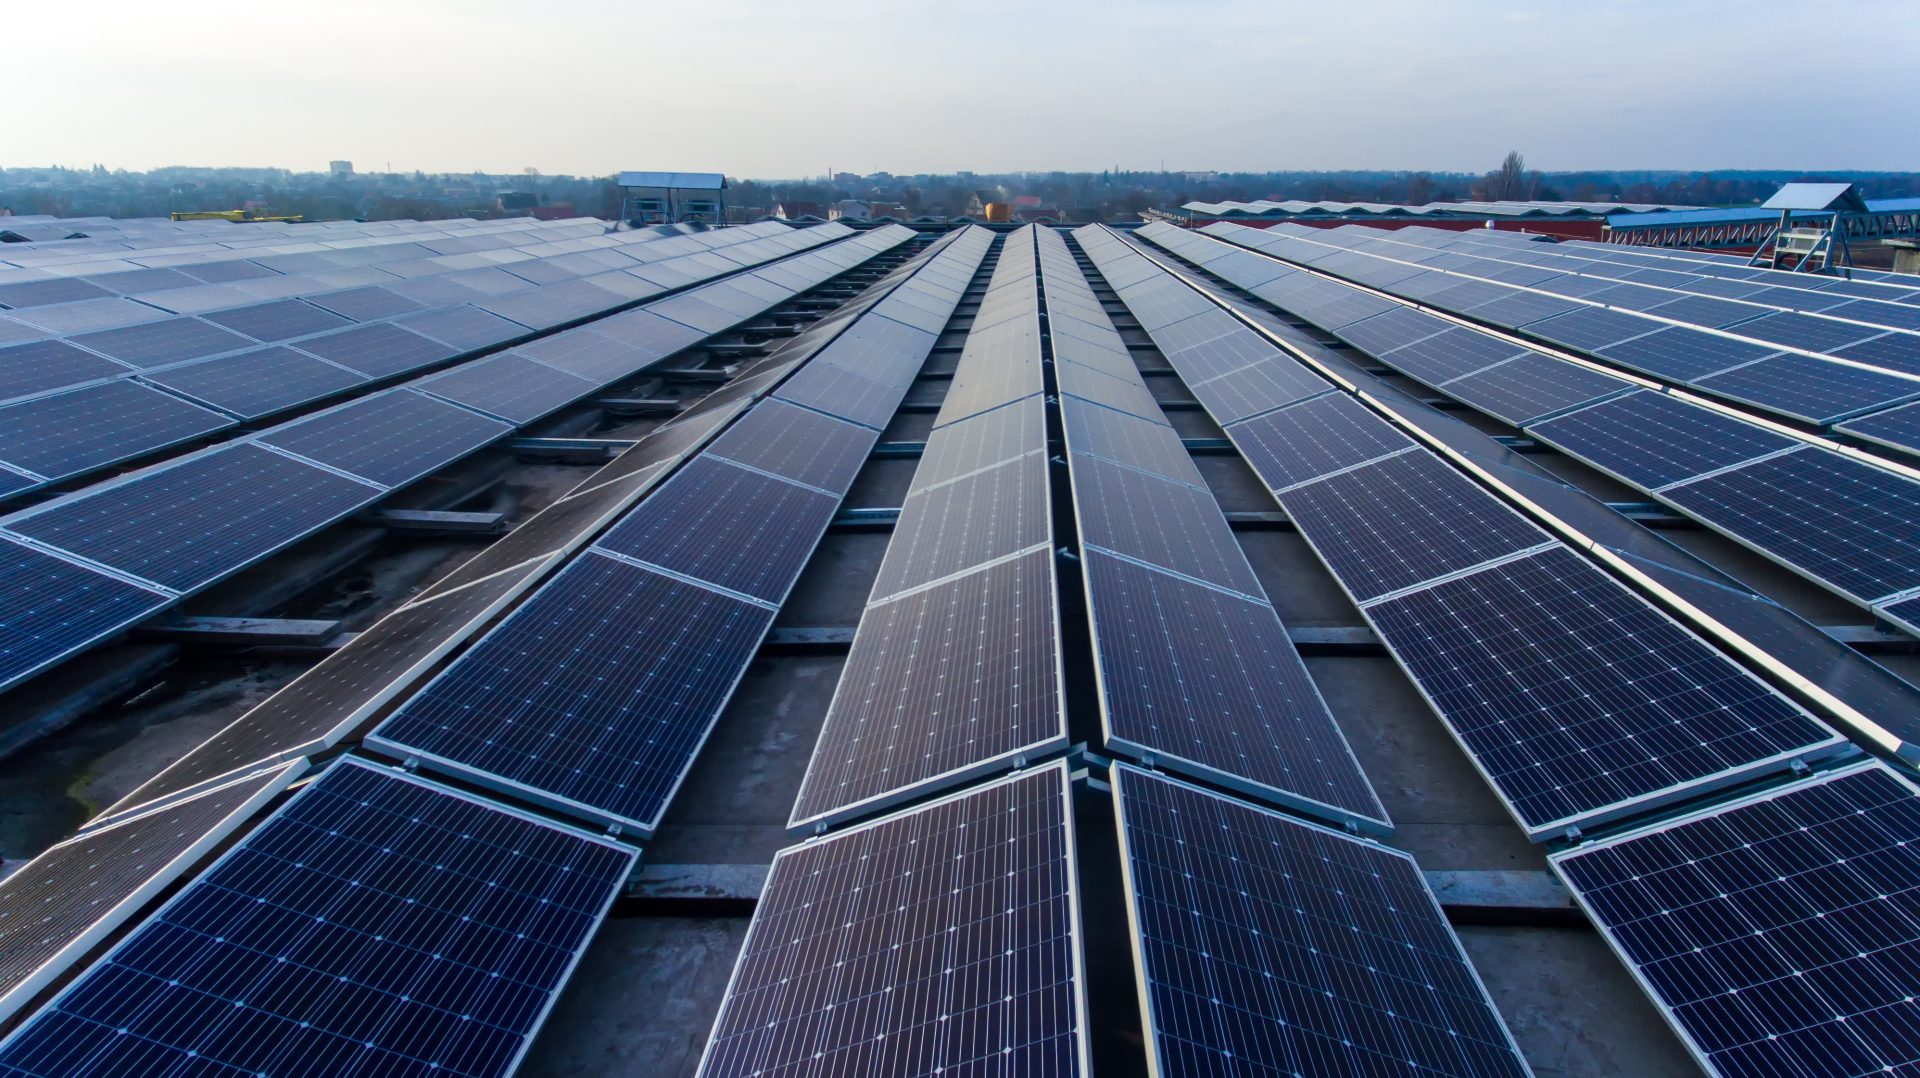 Das Flachdach einer Industriehalle ist komplett mit Solarpanelen belegt.